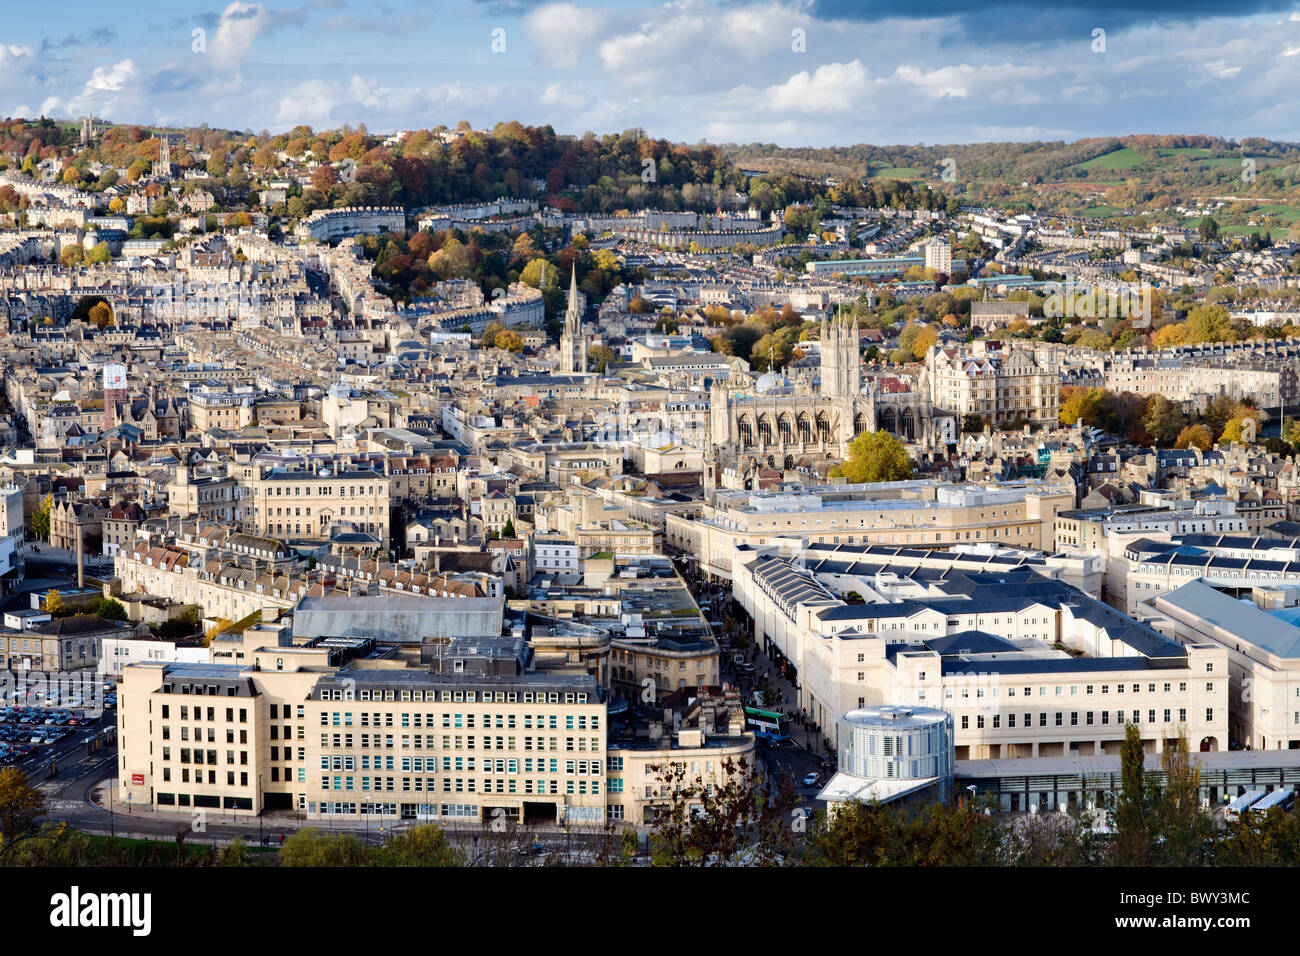 Vue d'automne sur la ville historique de Bath, Somerset, Angleterre montrant les rues, maisons, magasins, hôtels, de l'abbaye et églises Banque D'Images